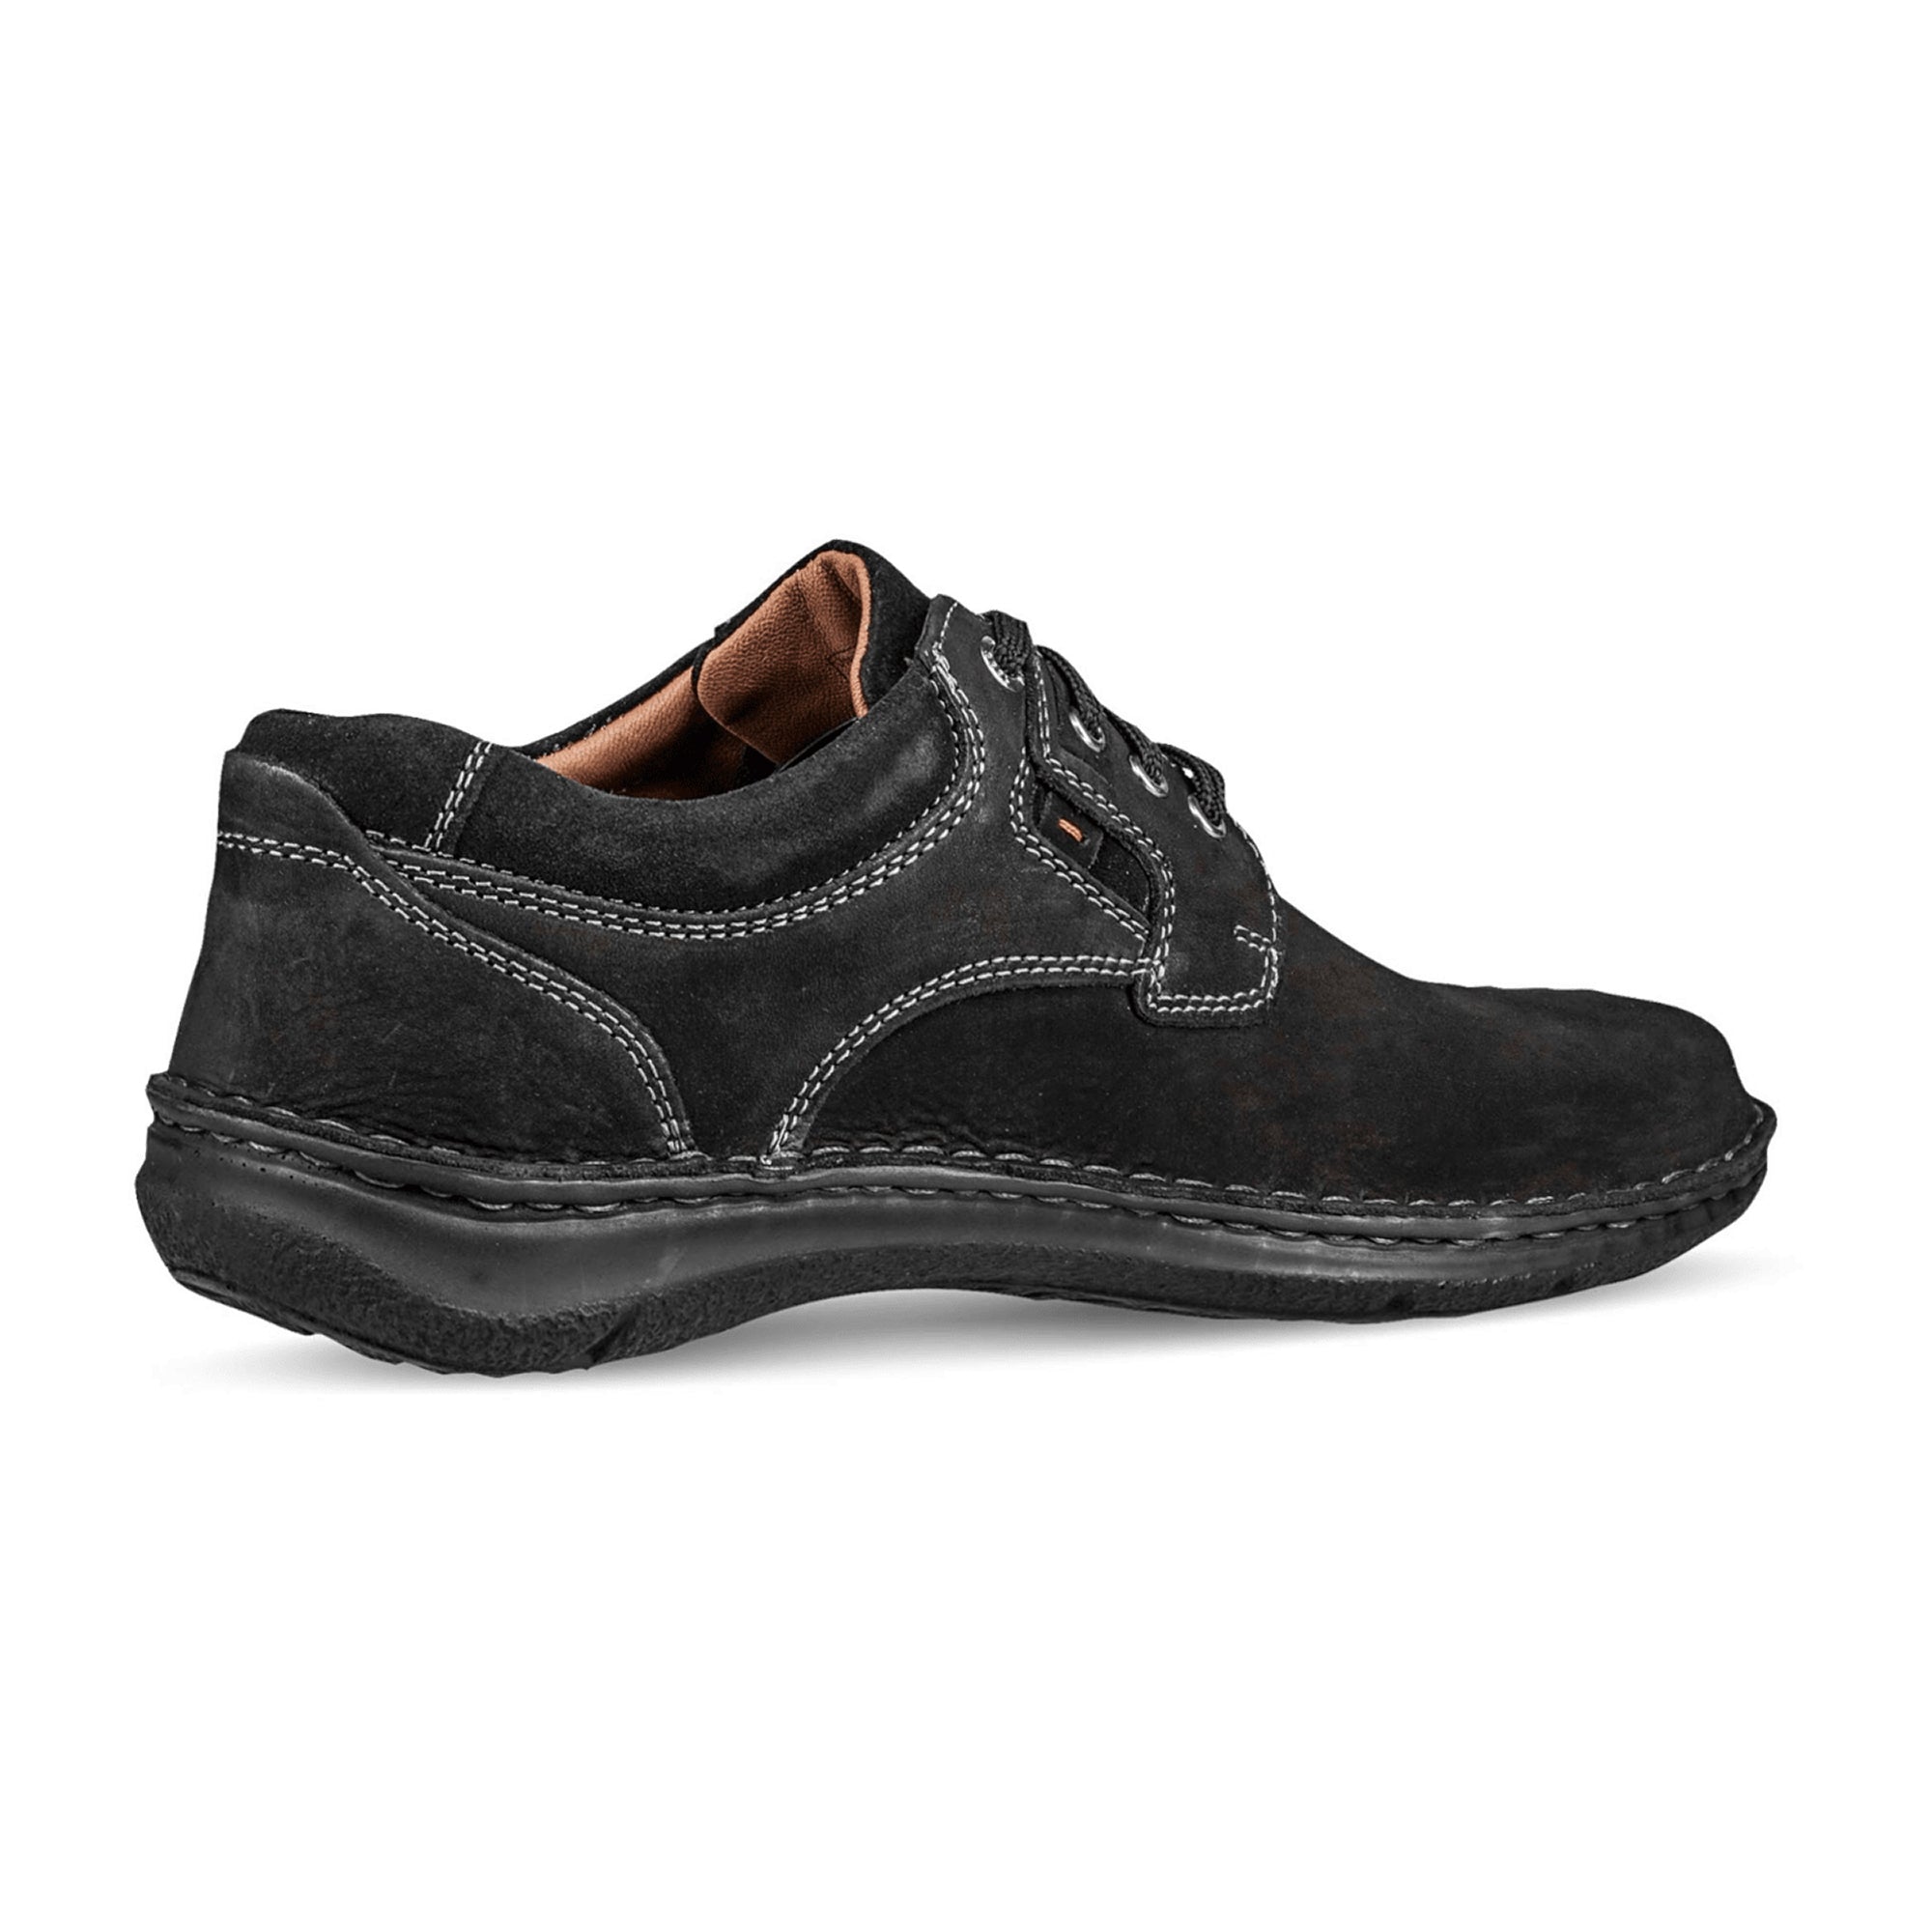 Josef Seibel Anvers 36 Men's Shoes in Black